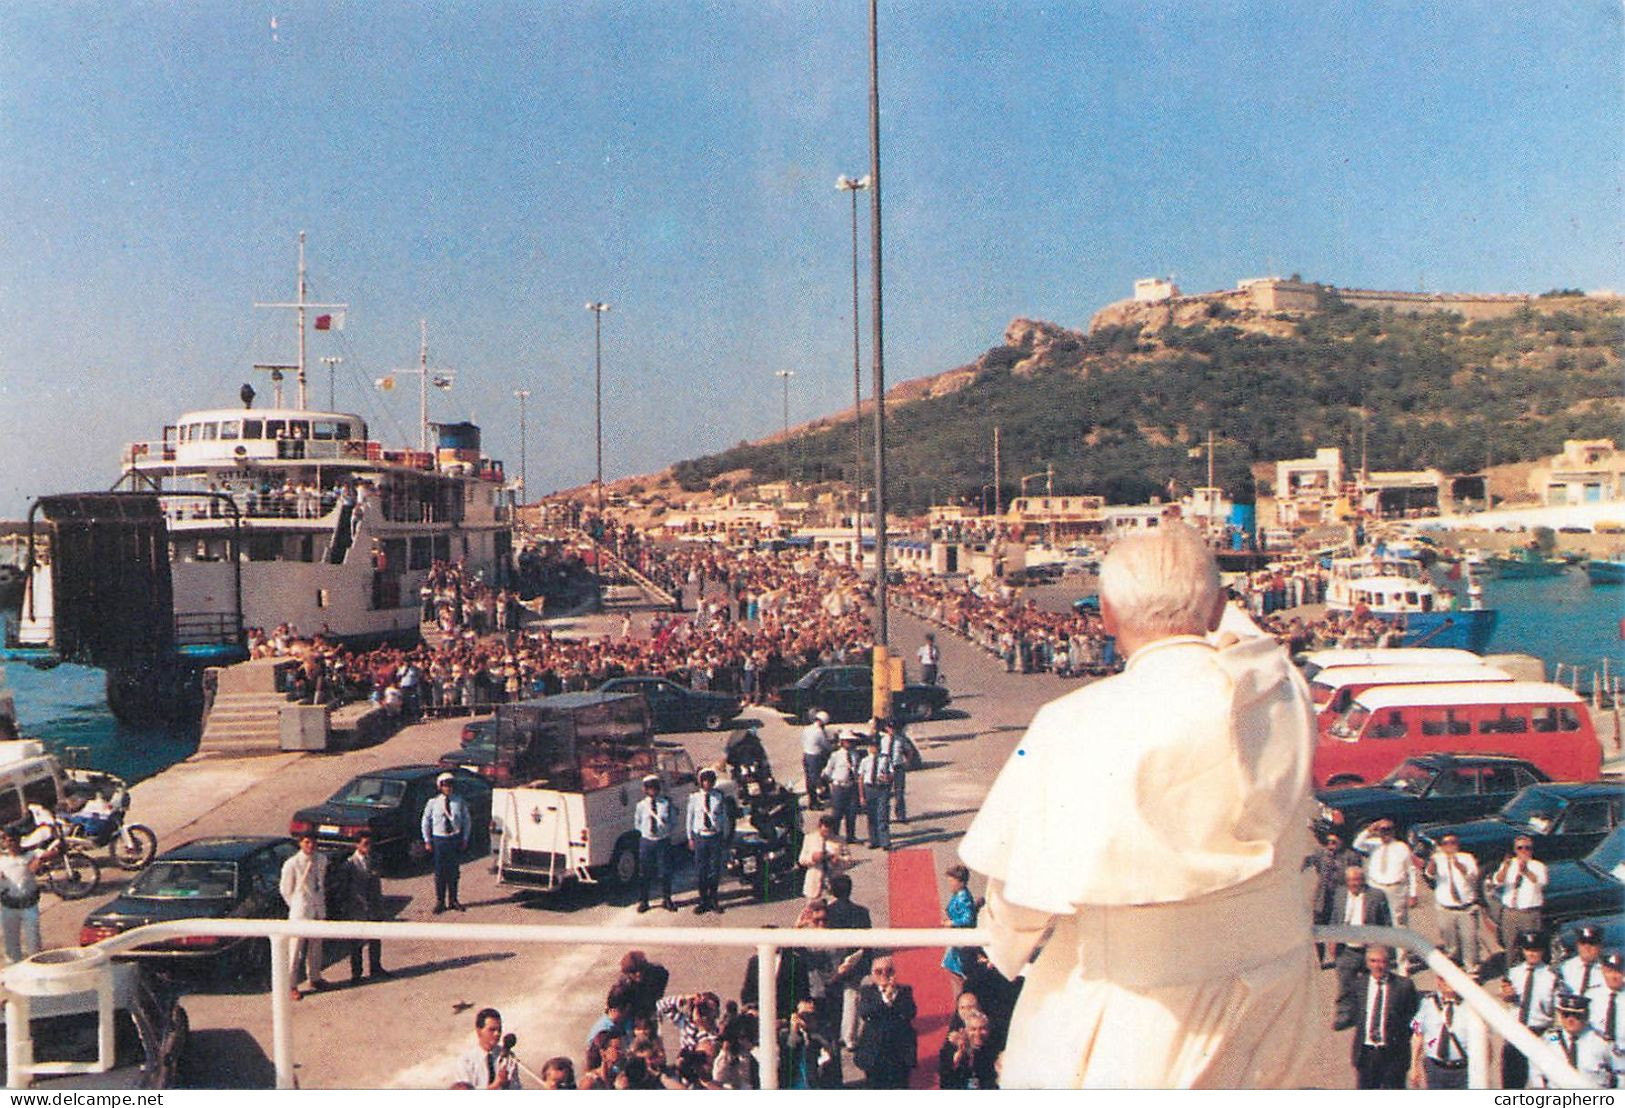 Pope John Paul II Papal Travels Postcard Malta Mellieħa - Papes